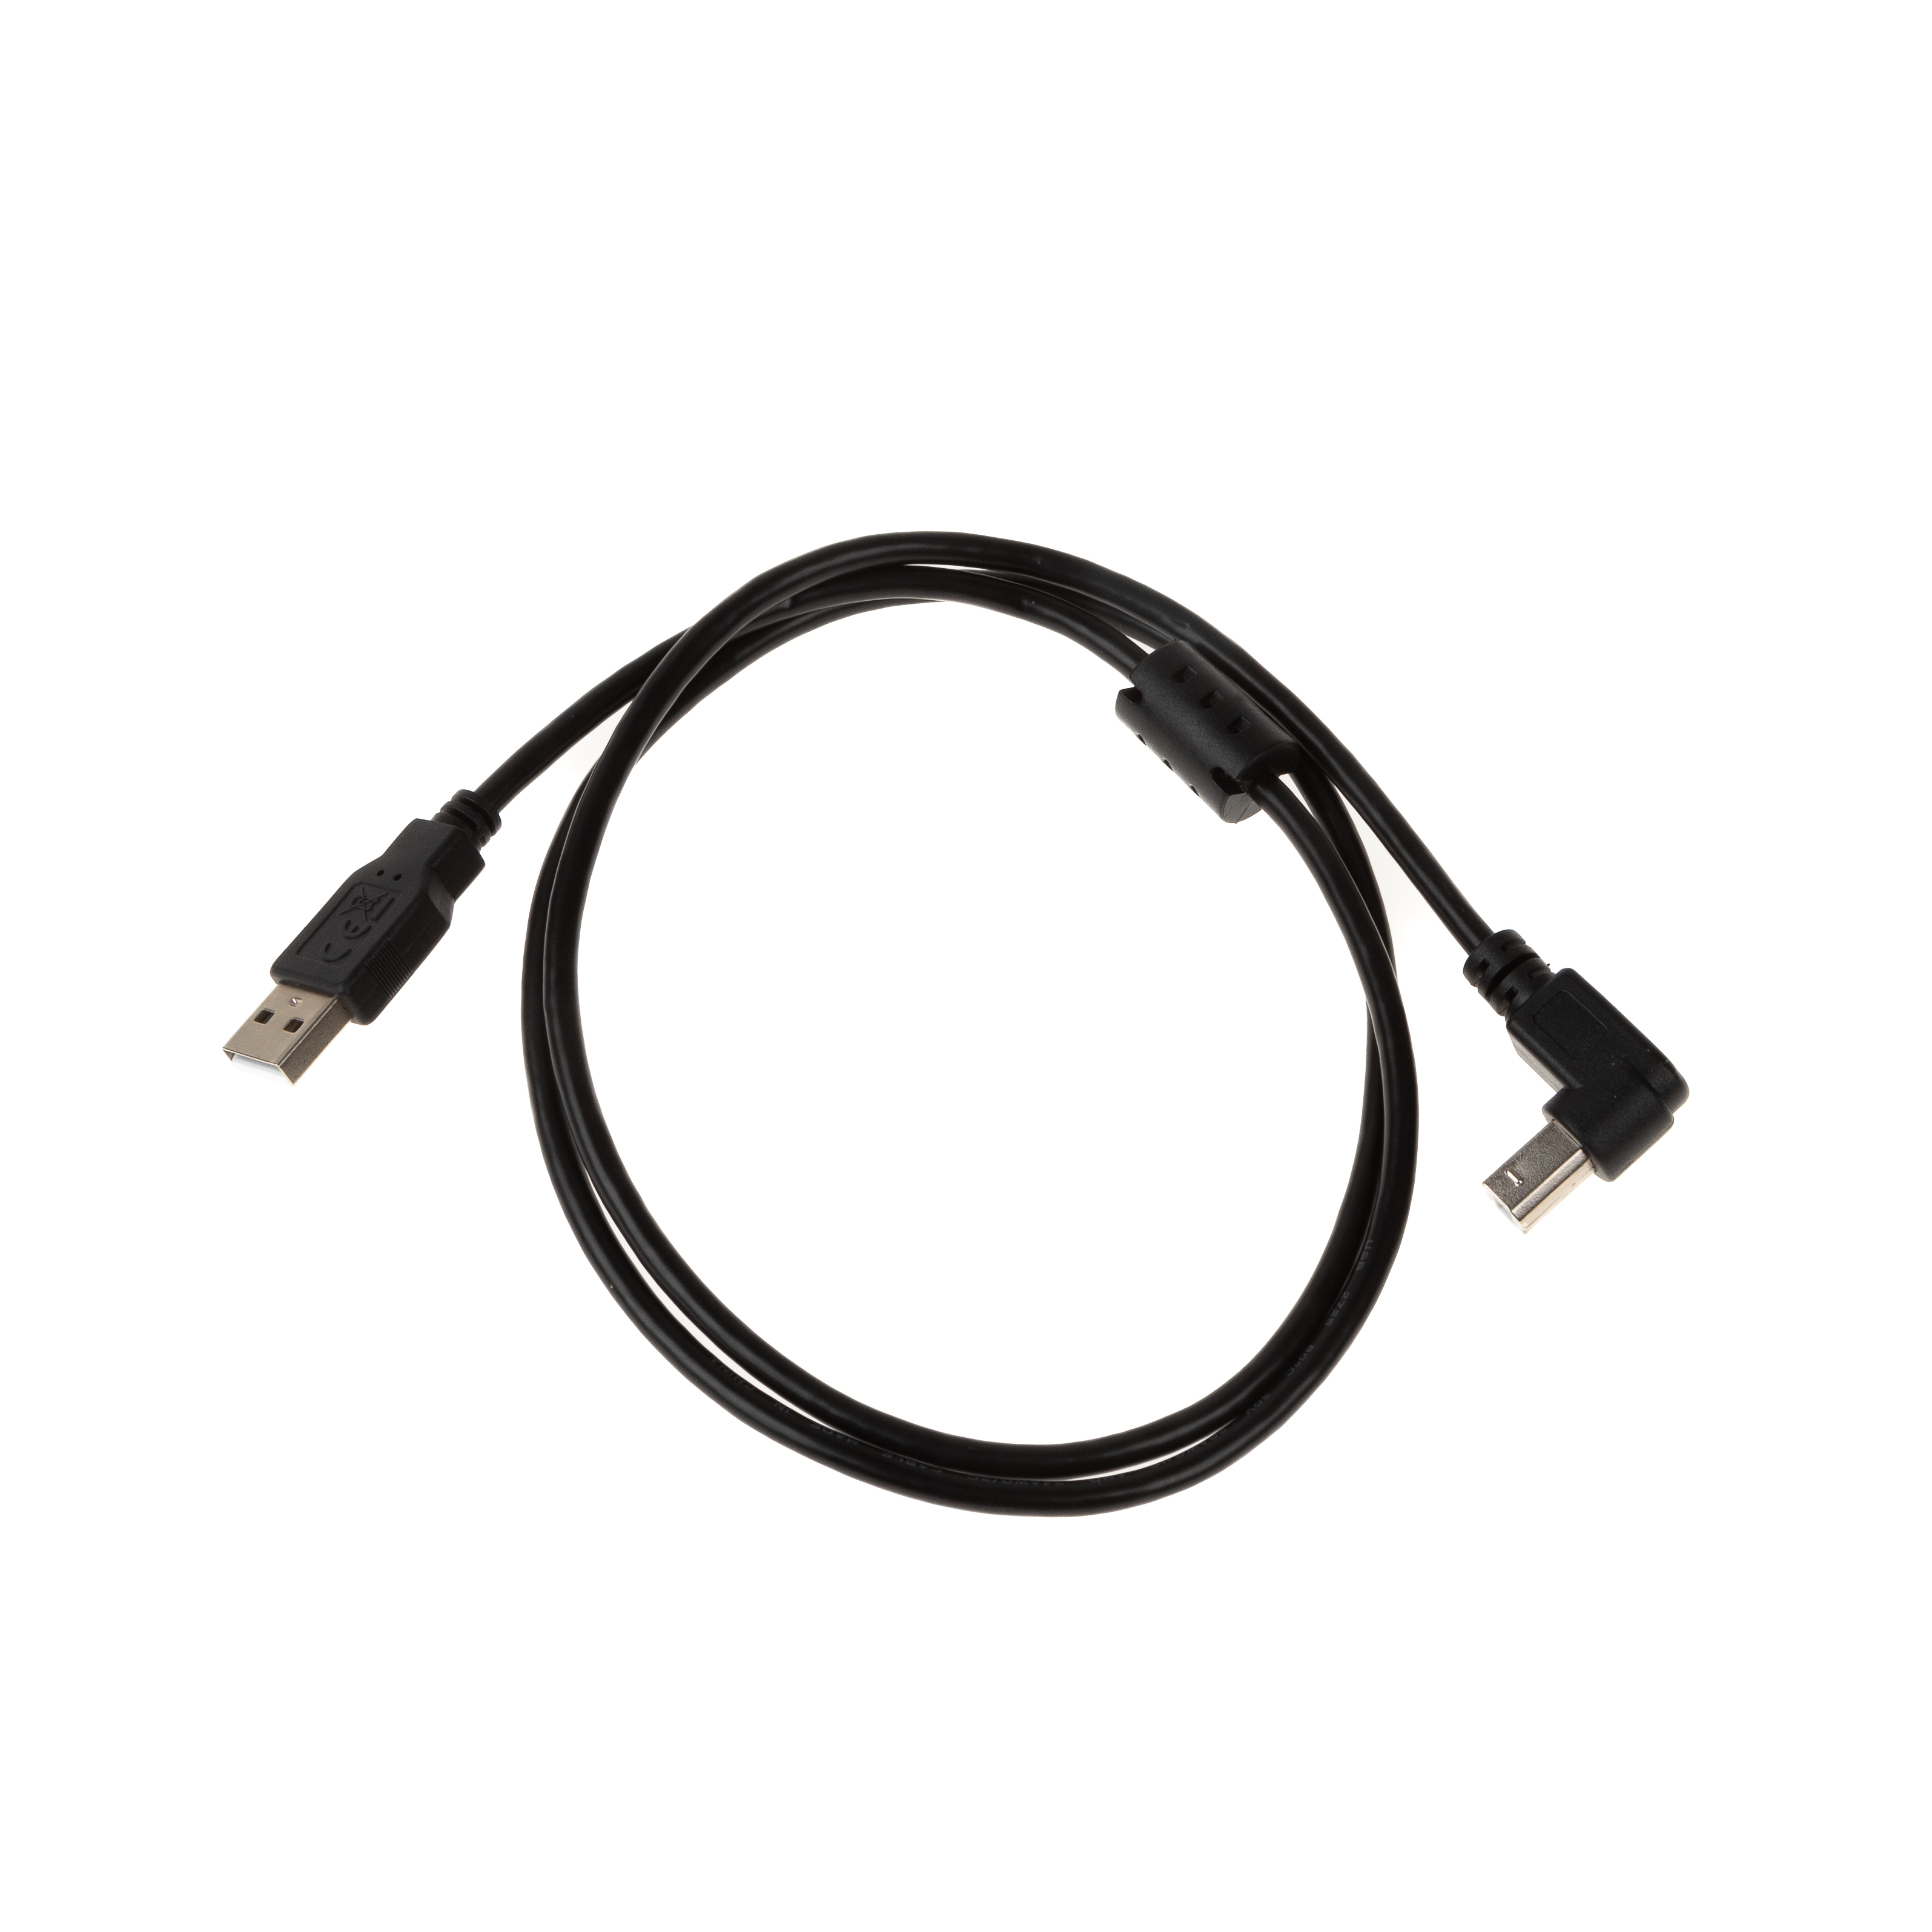 USB 2.0 Kabel mit B-Winkelstecker (90° NACH UNTEN) und Ferritkern 1m